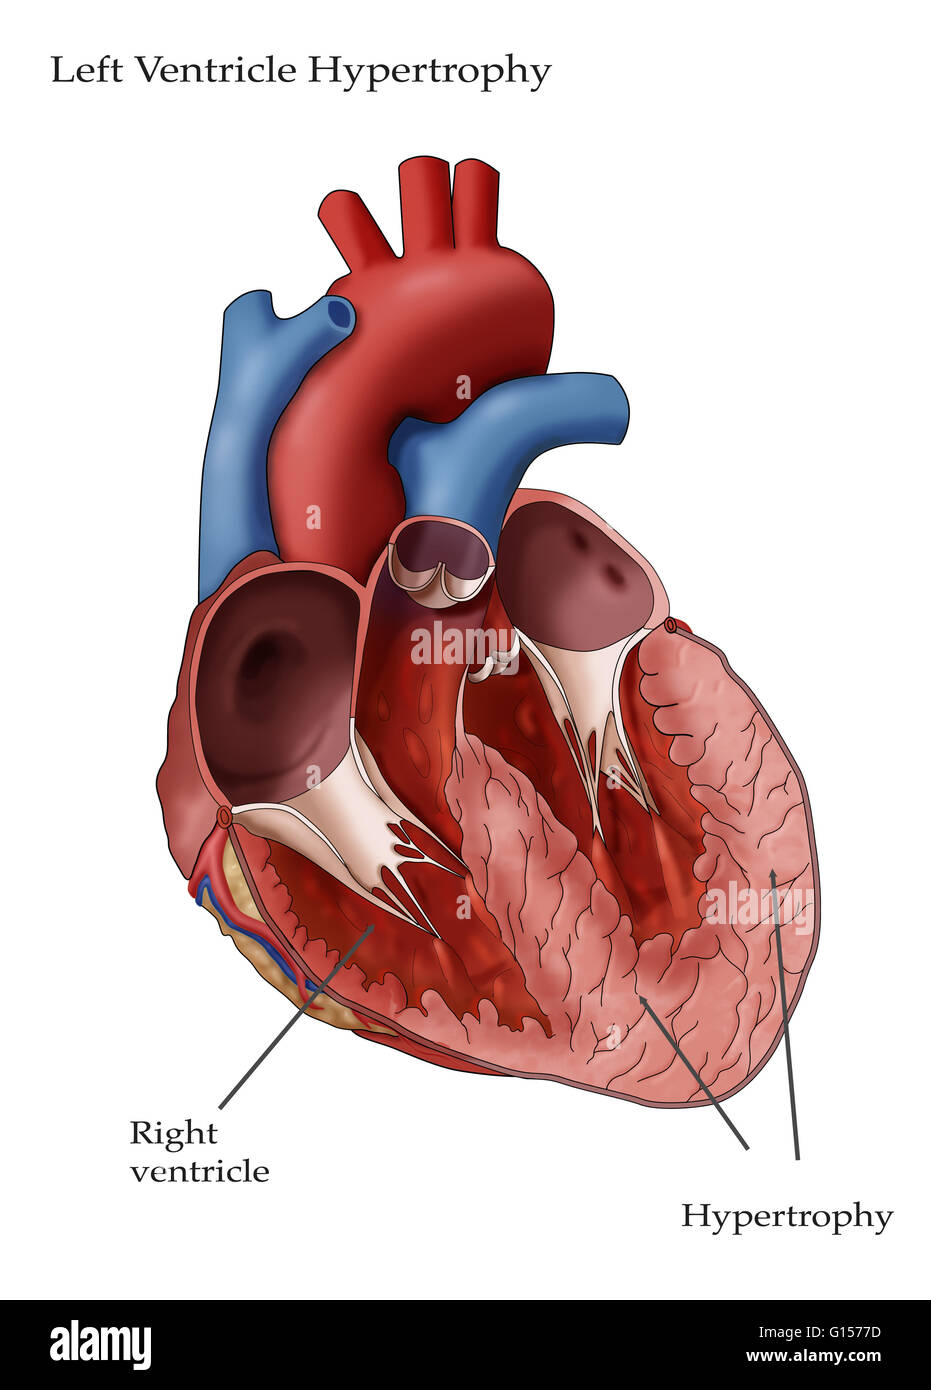 Abbildung des Herzens mit Hypertrophie des linken Ventrikels. Linken Ventrikels Hypertrophie (LHV) kann in Reaktion auf Faktoren wie Bluthochdruck entwickeln, die die linke Herzkammer, härter zu arbeiten erfordern. Die Arbeitsbelastung erhöht, die Wände des t Stockfoto